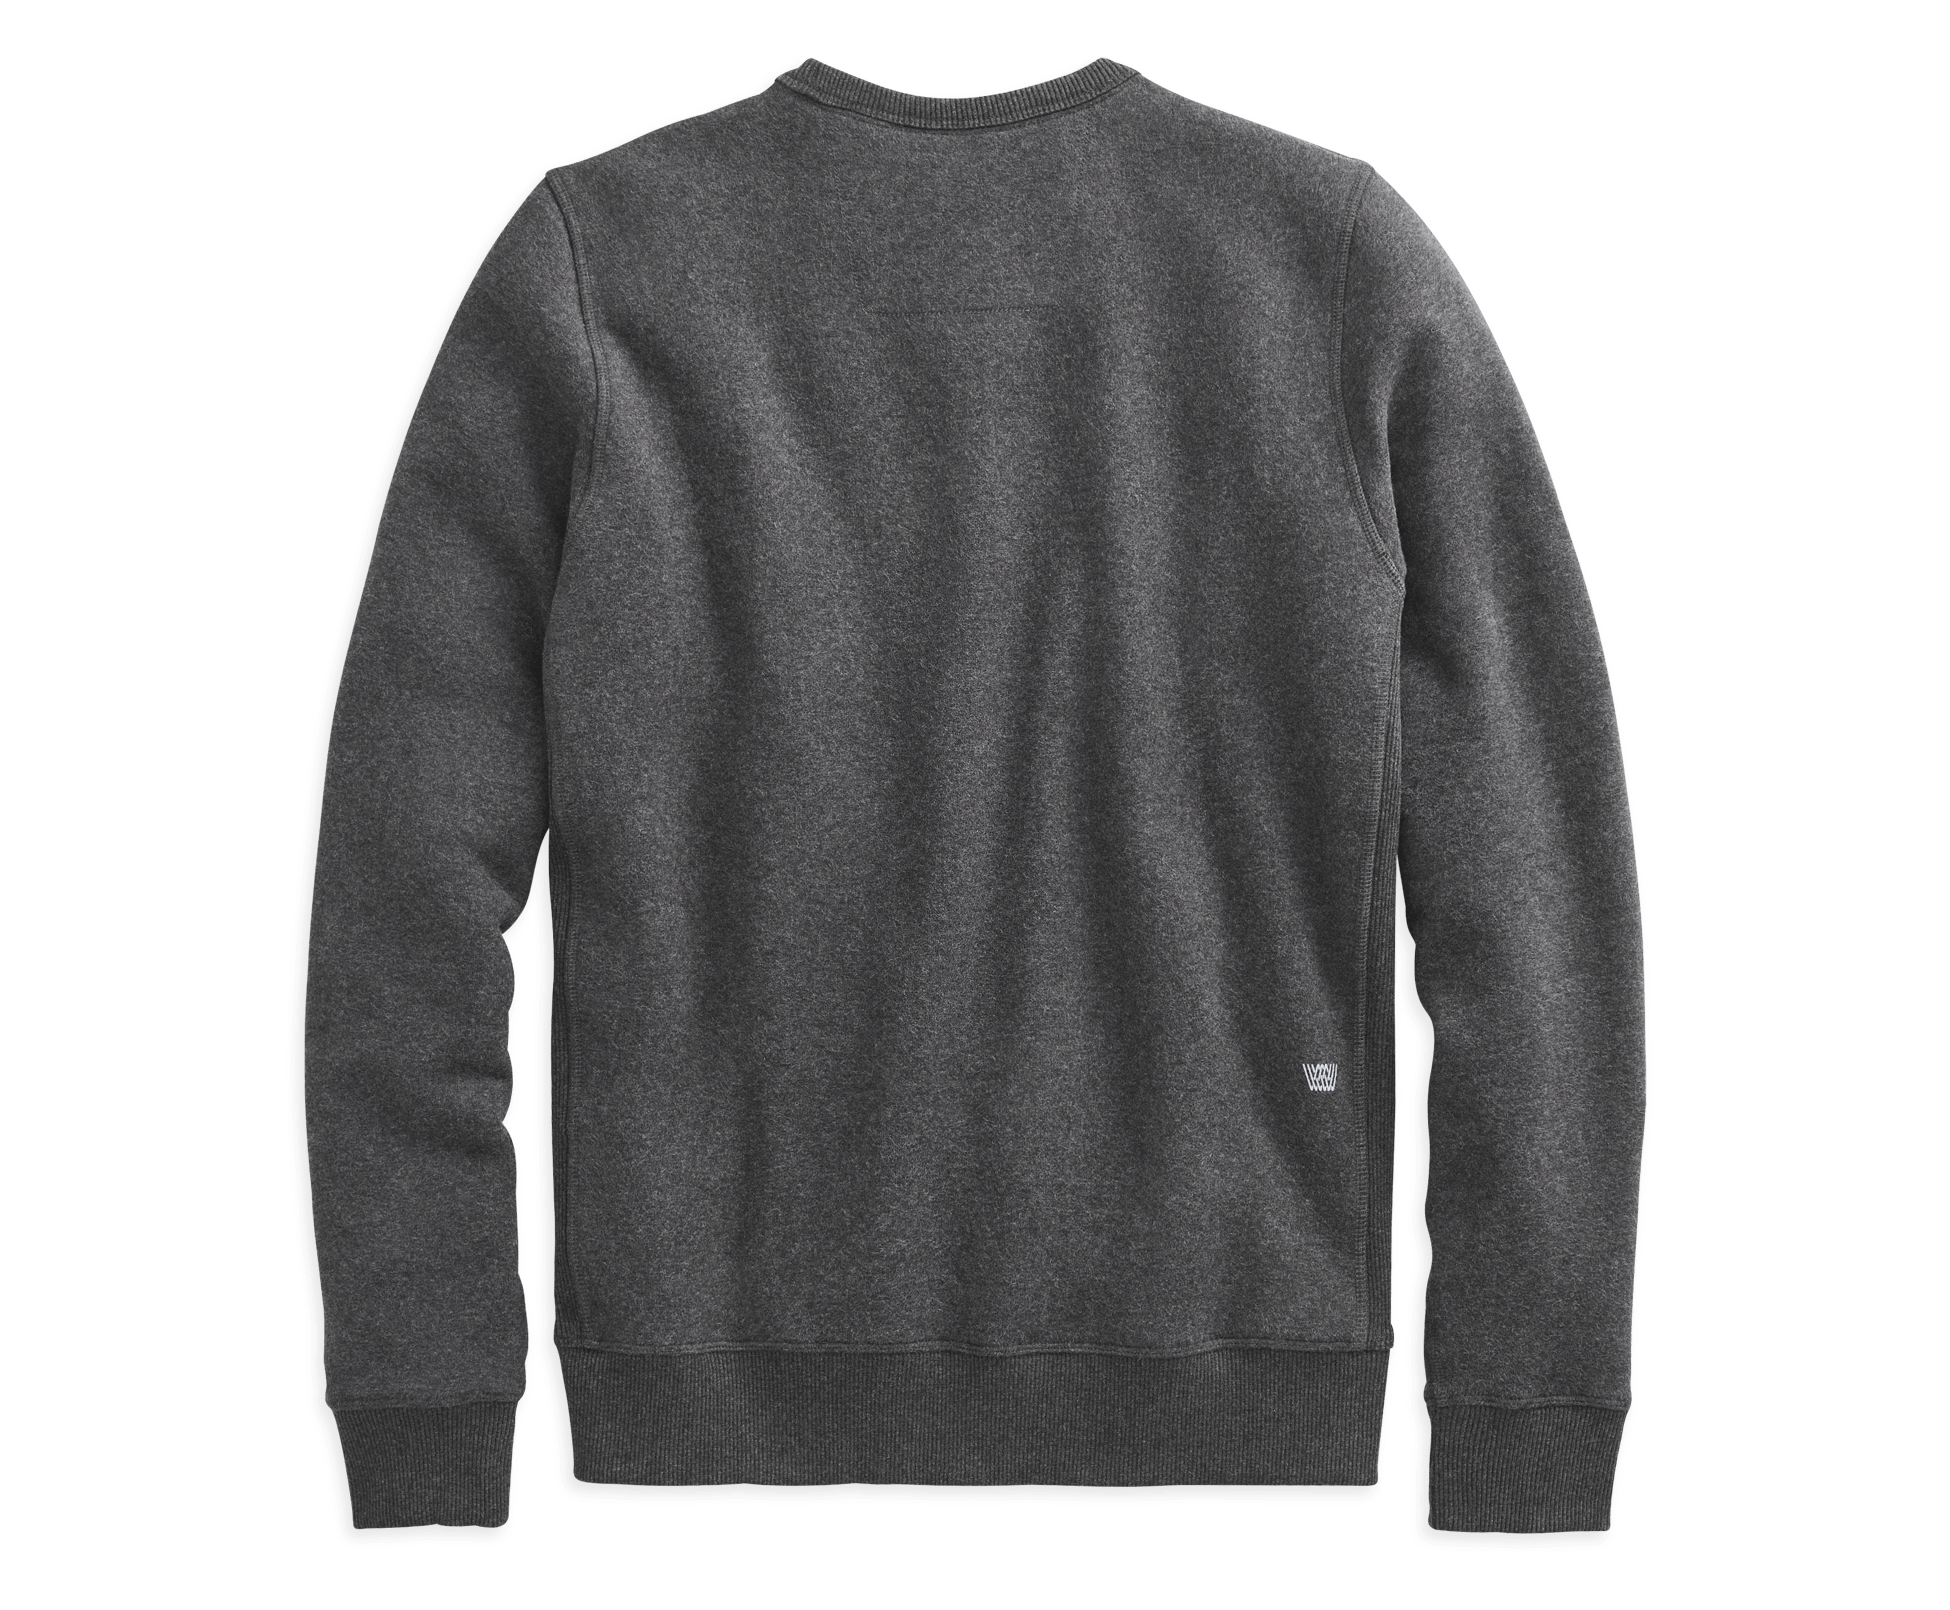 Heather Dark Grey Cotton Crew Neck Sweater